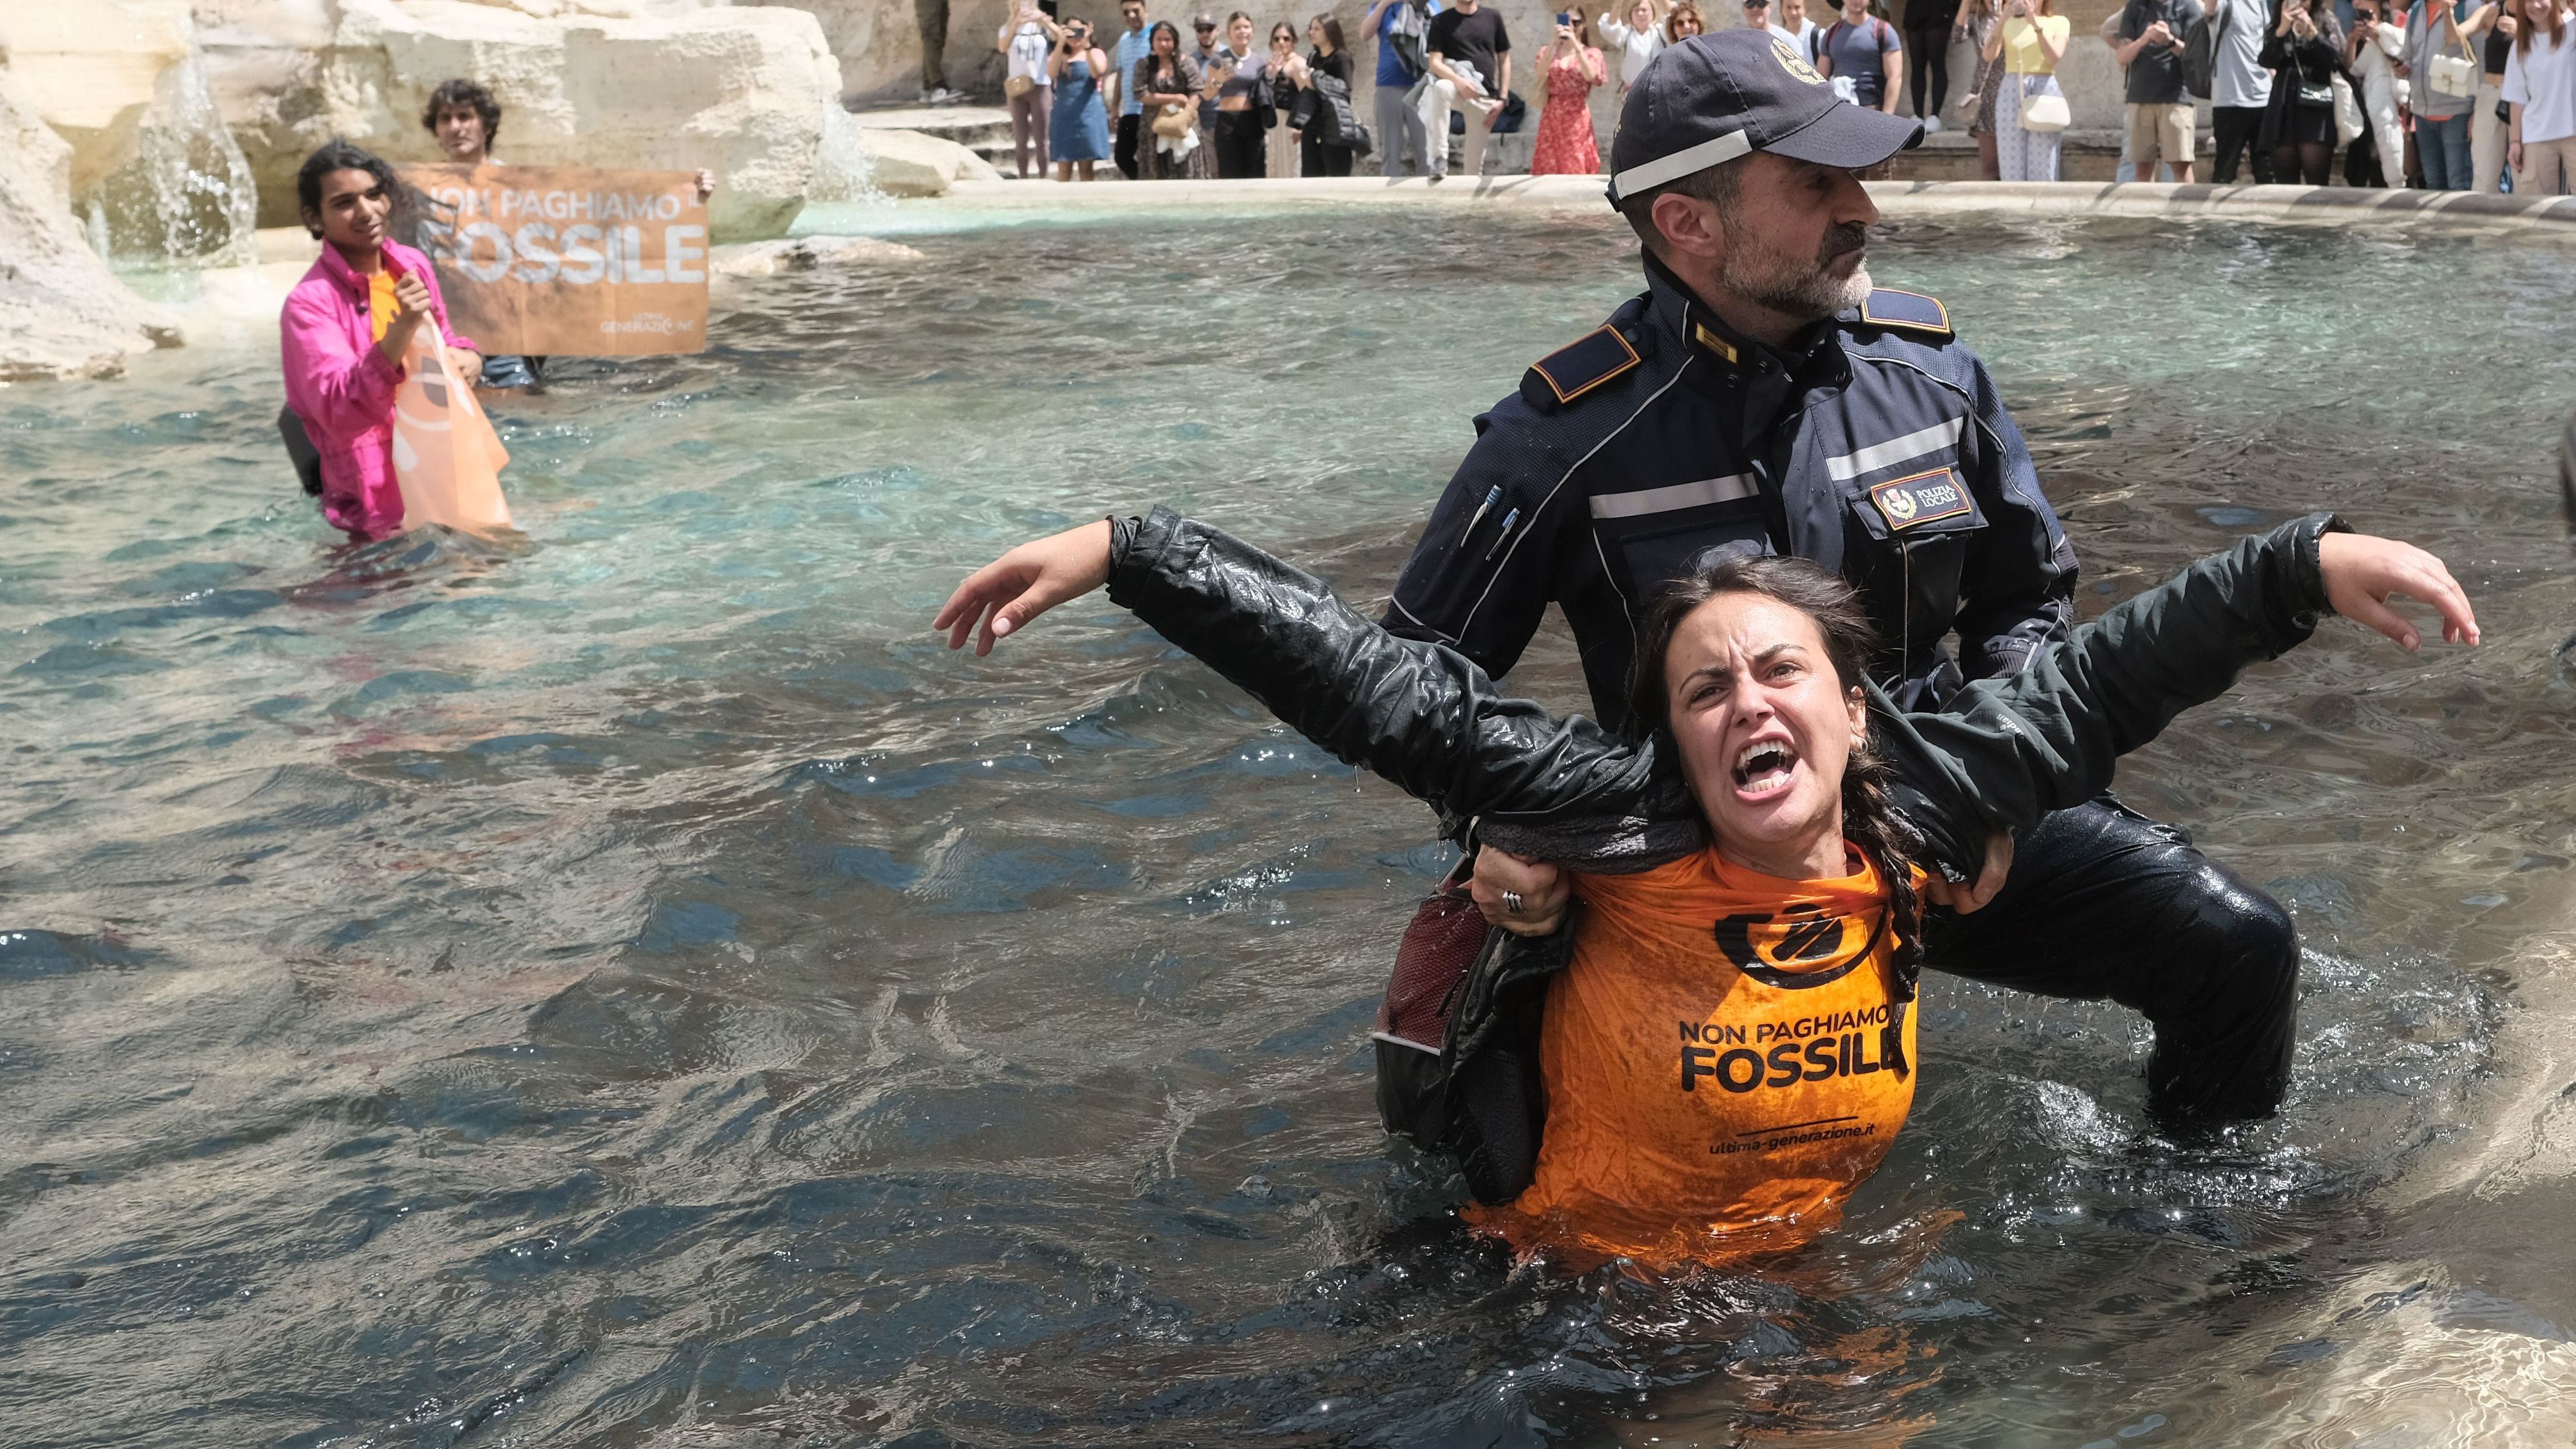 Klimaaktivist:innen der "Letzten Generation" werden aus dem Trevi-Brunnen abgeführt.